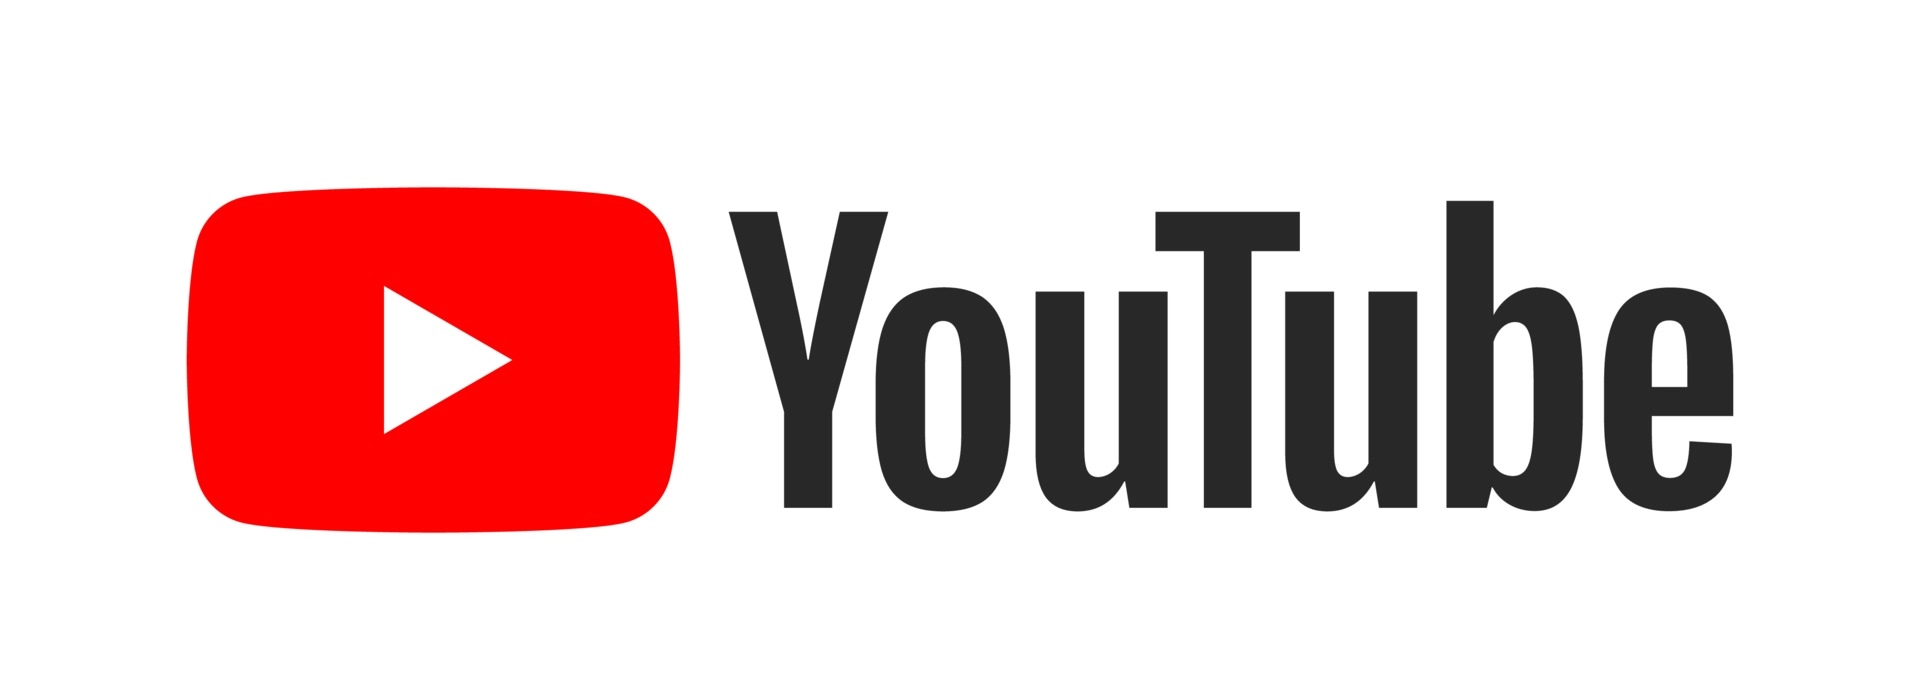 Ikons Youtube